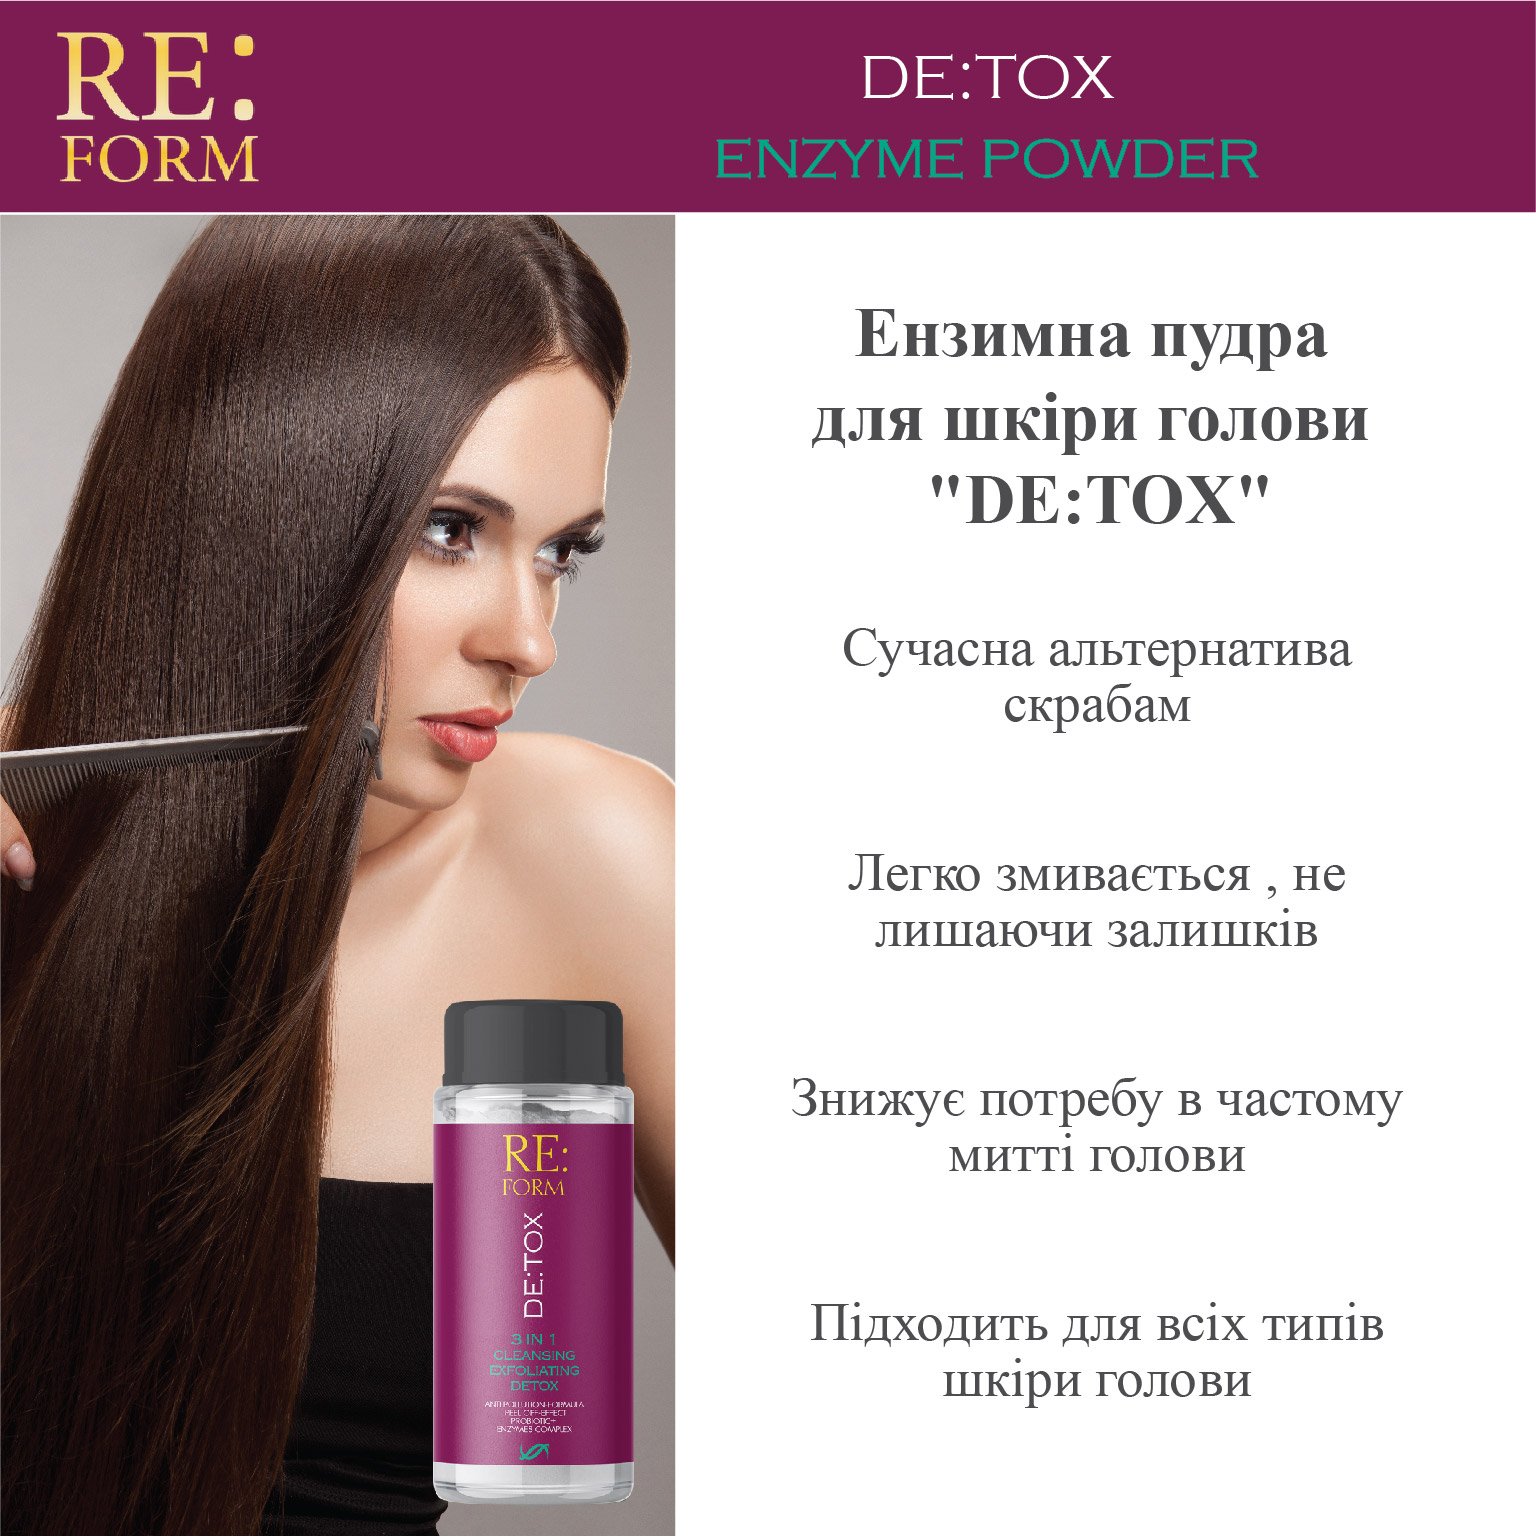 Ензимна пудра для шкіри голови Re:form De:Tox, очищення і детоксикація волосся, 80 г - фото 4